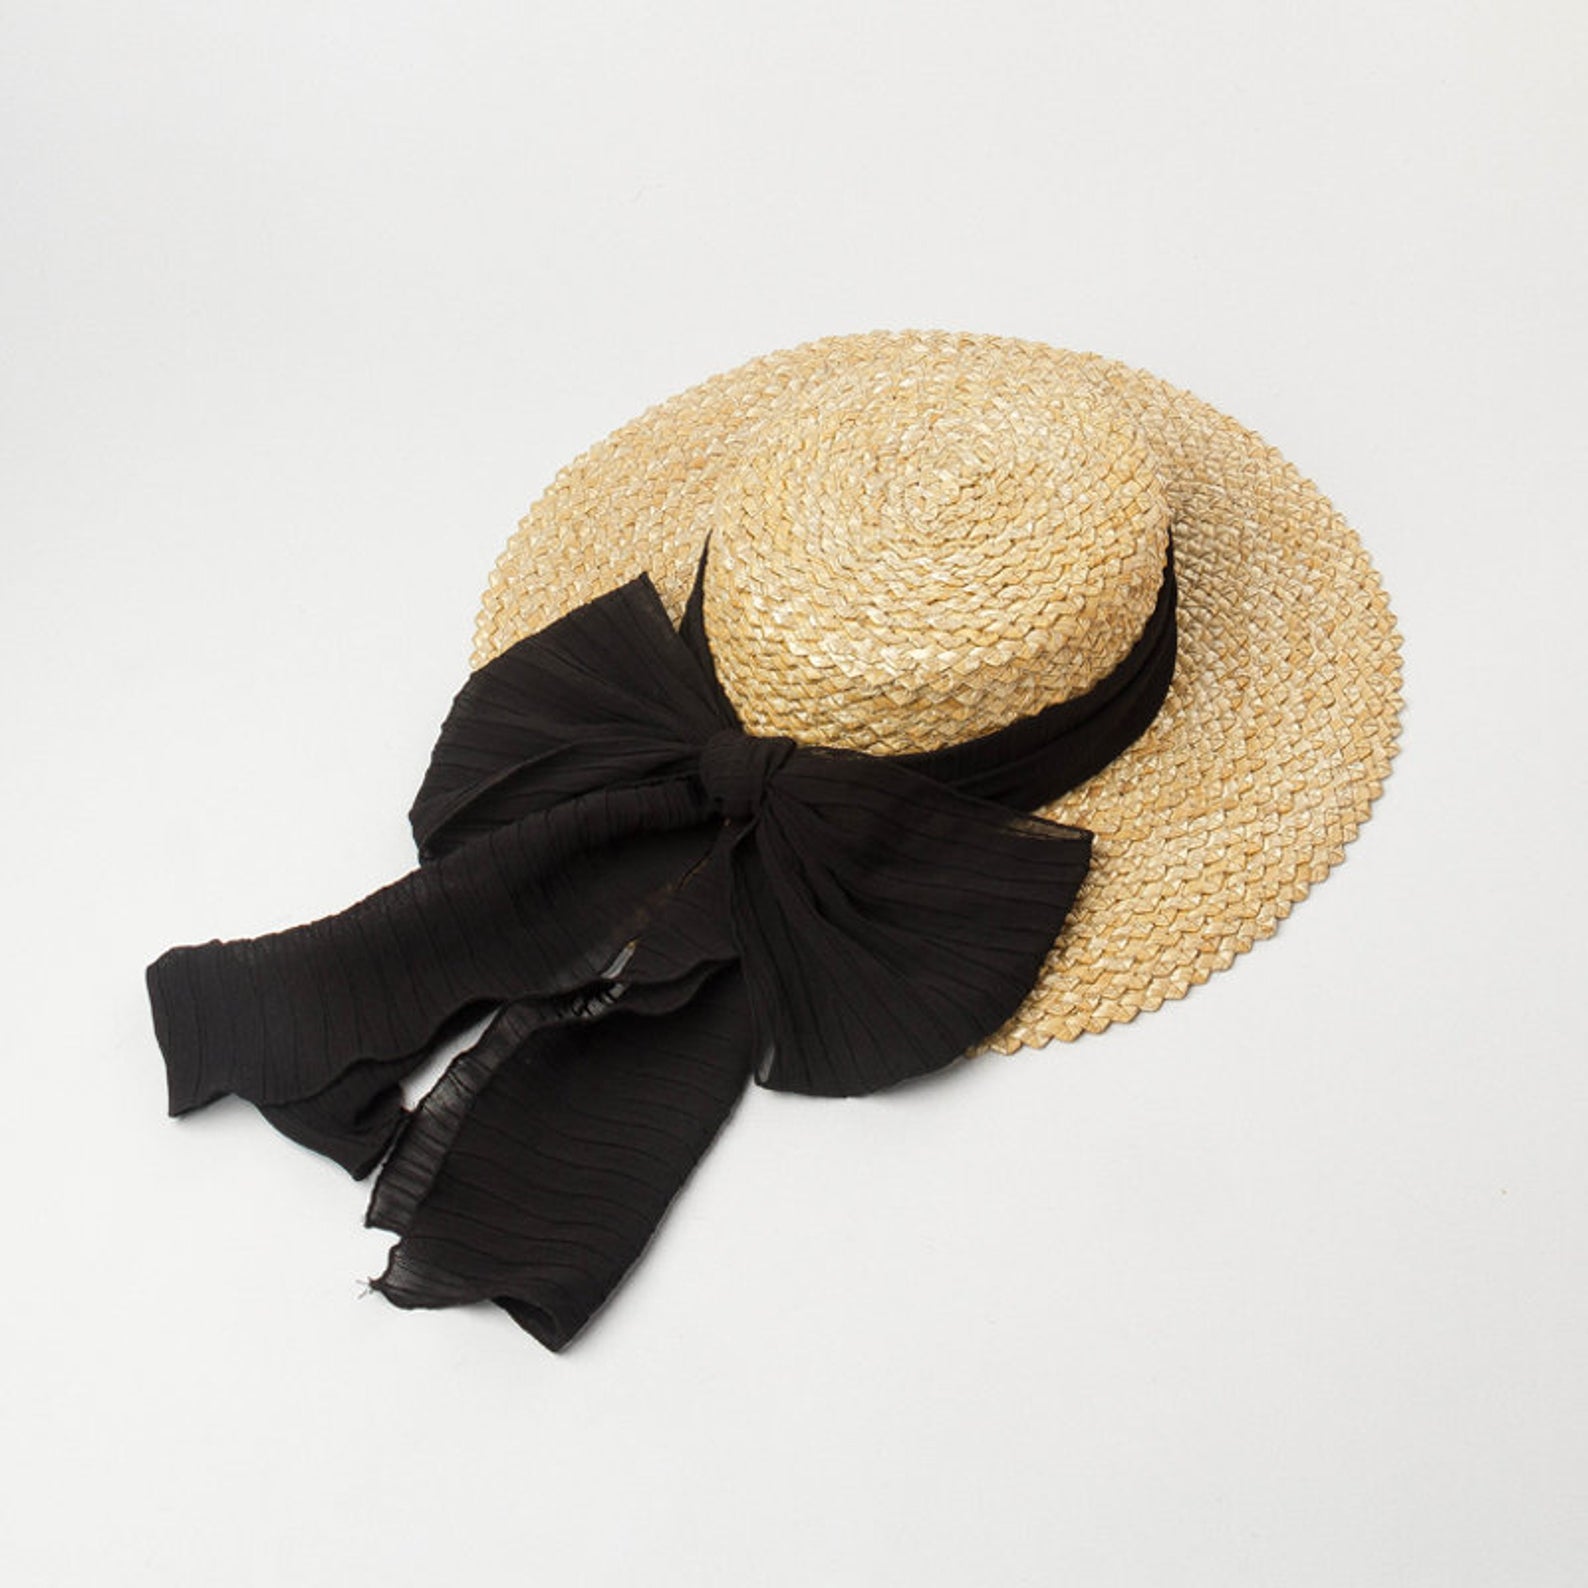 Janice Winner Flat Top Bow Hat Cute Summer Sun Hats for Your Wedding or Elopement Bridal Musings - 25 chiếc mũ cô dâu mùa hè hợp thời trang cho chuyến đi của bạn Cottagecore